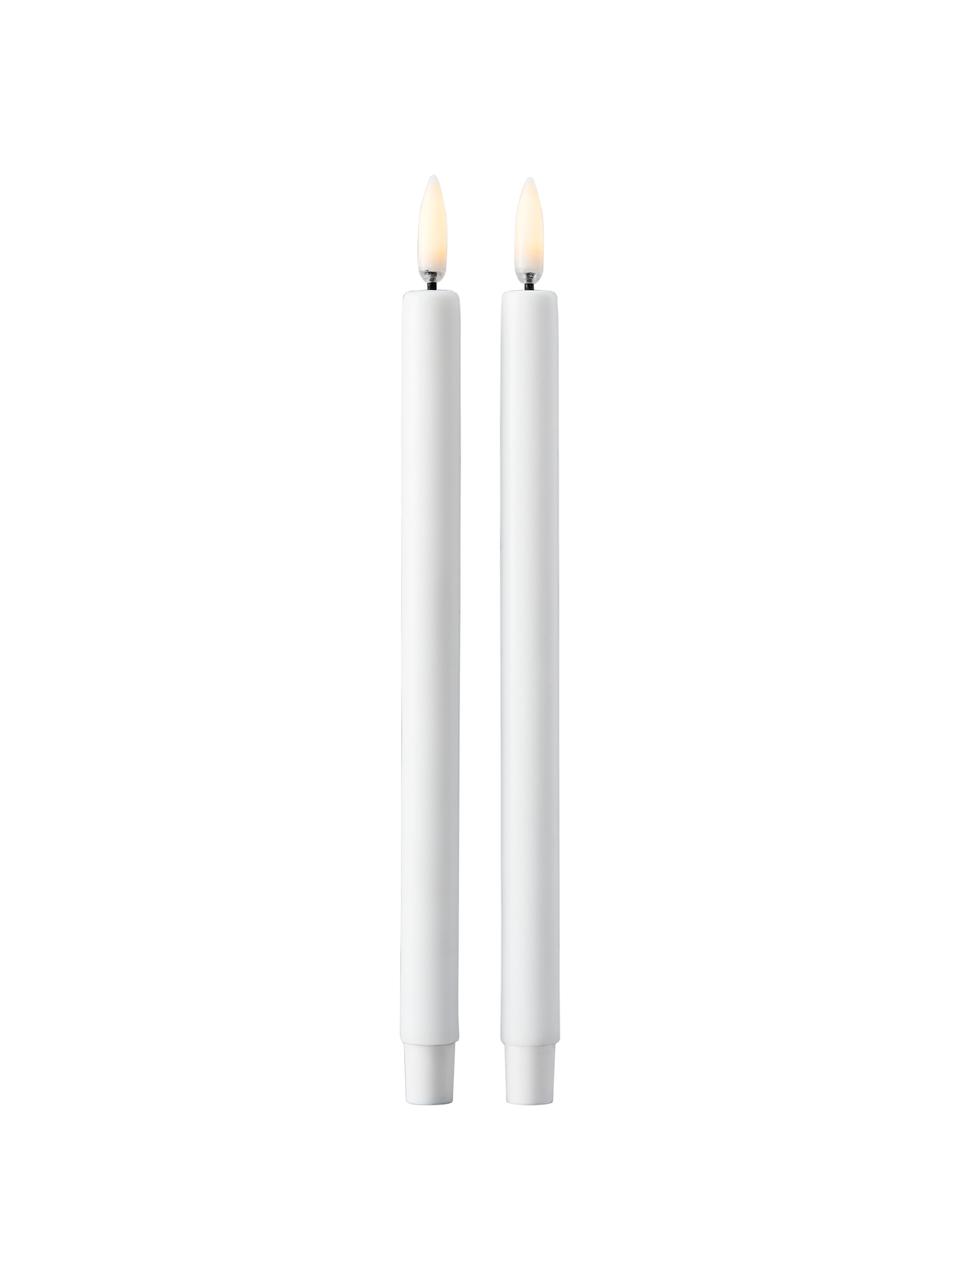 Velas pillar LED Uyuni Lighting, 2 uds., Plástico, Blanco, Ø 1 x Al 20 cm